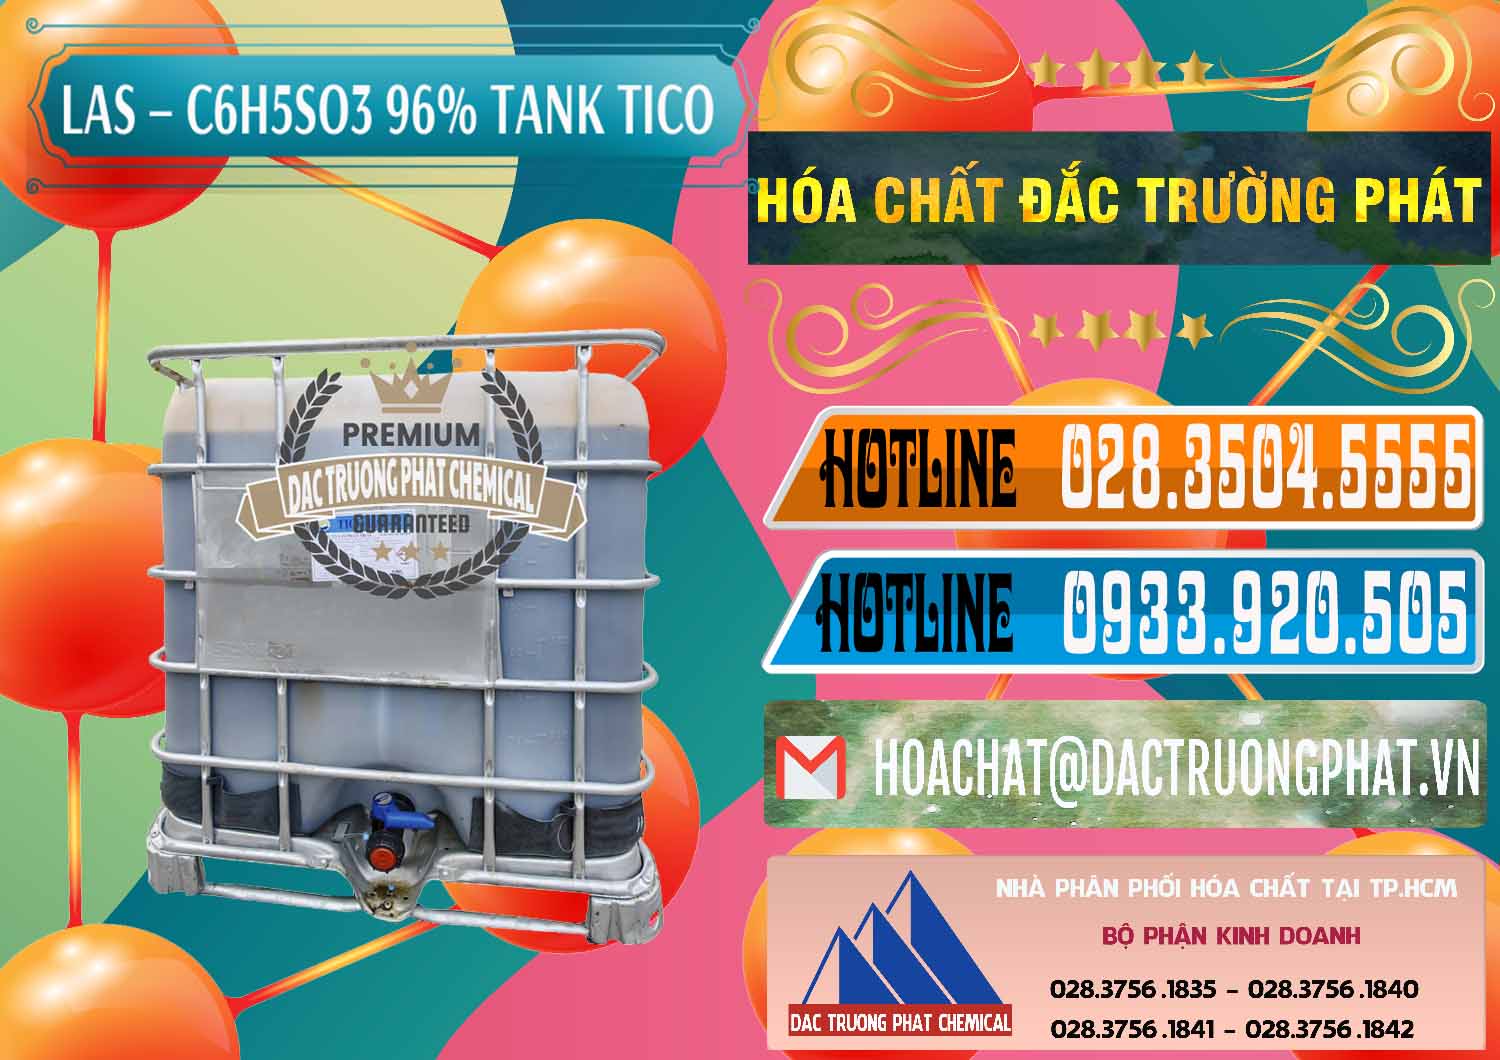 Nơi bán & cung ứng Chất tạo bọt Las P Tico Tank IBC Bồn Việt Nam - 0488 - Phân phối - nhập khẩu hóa chất tại TP.HCM - stmp.net